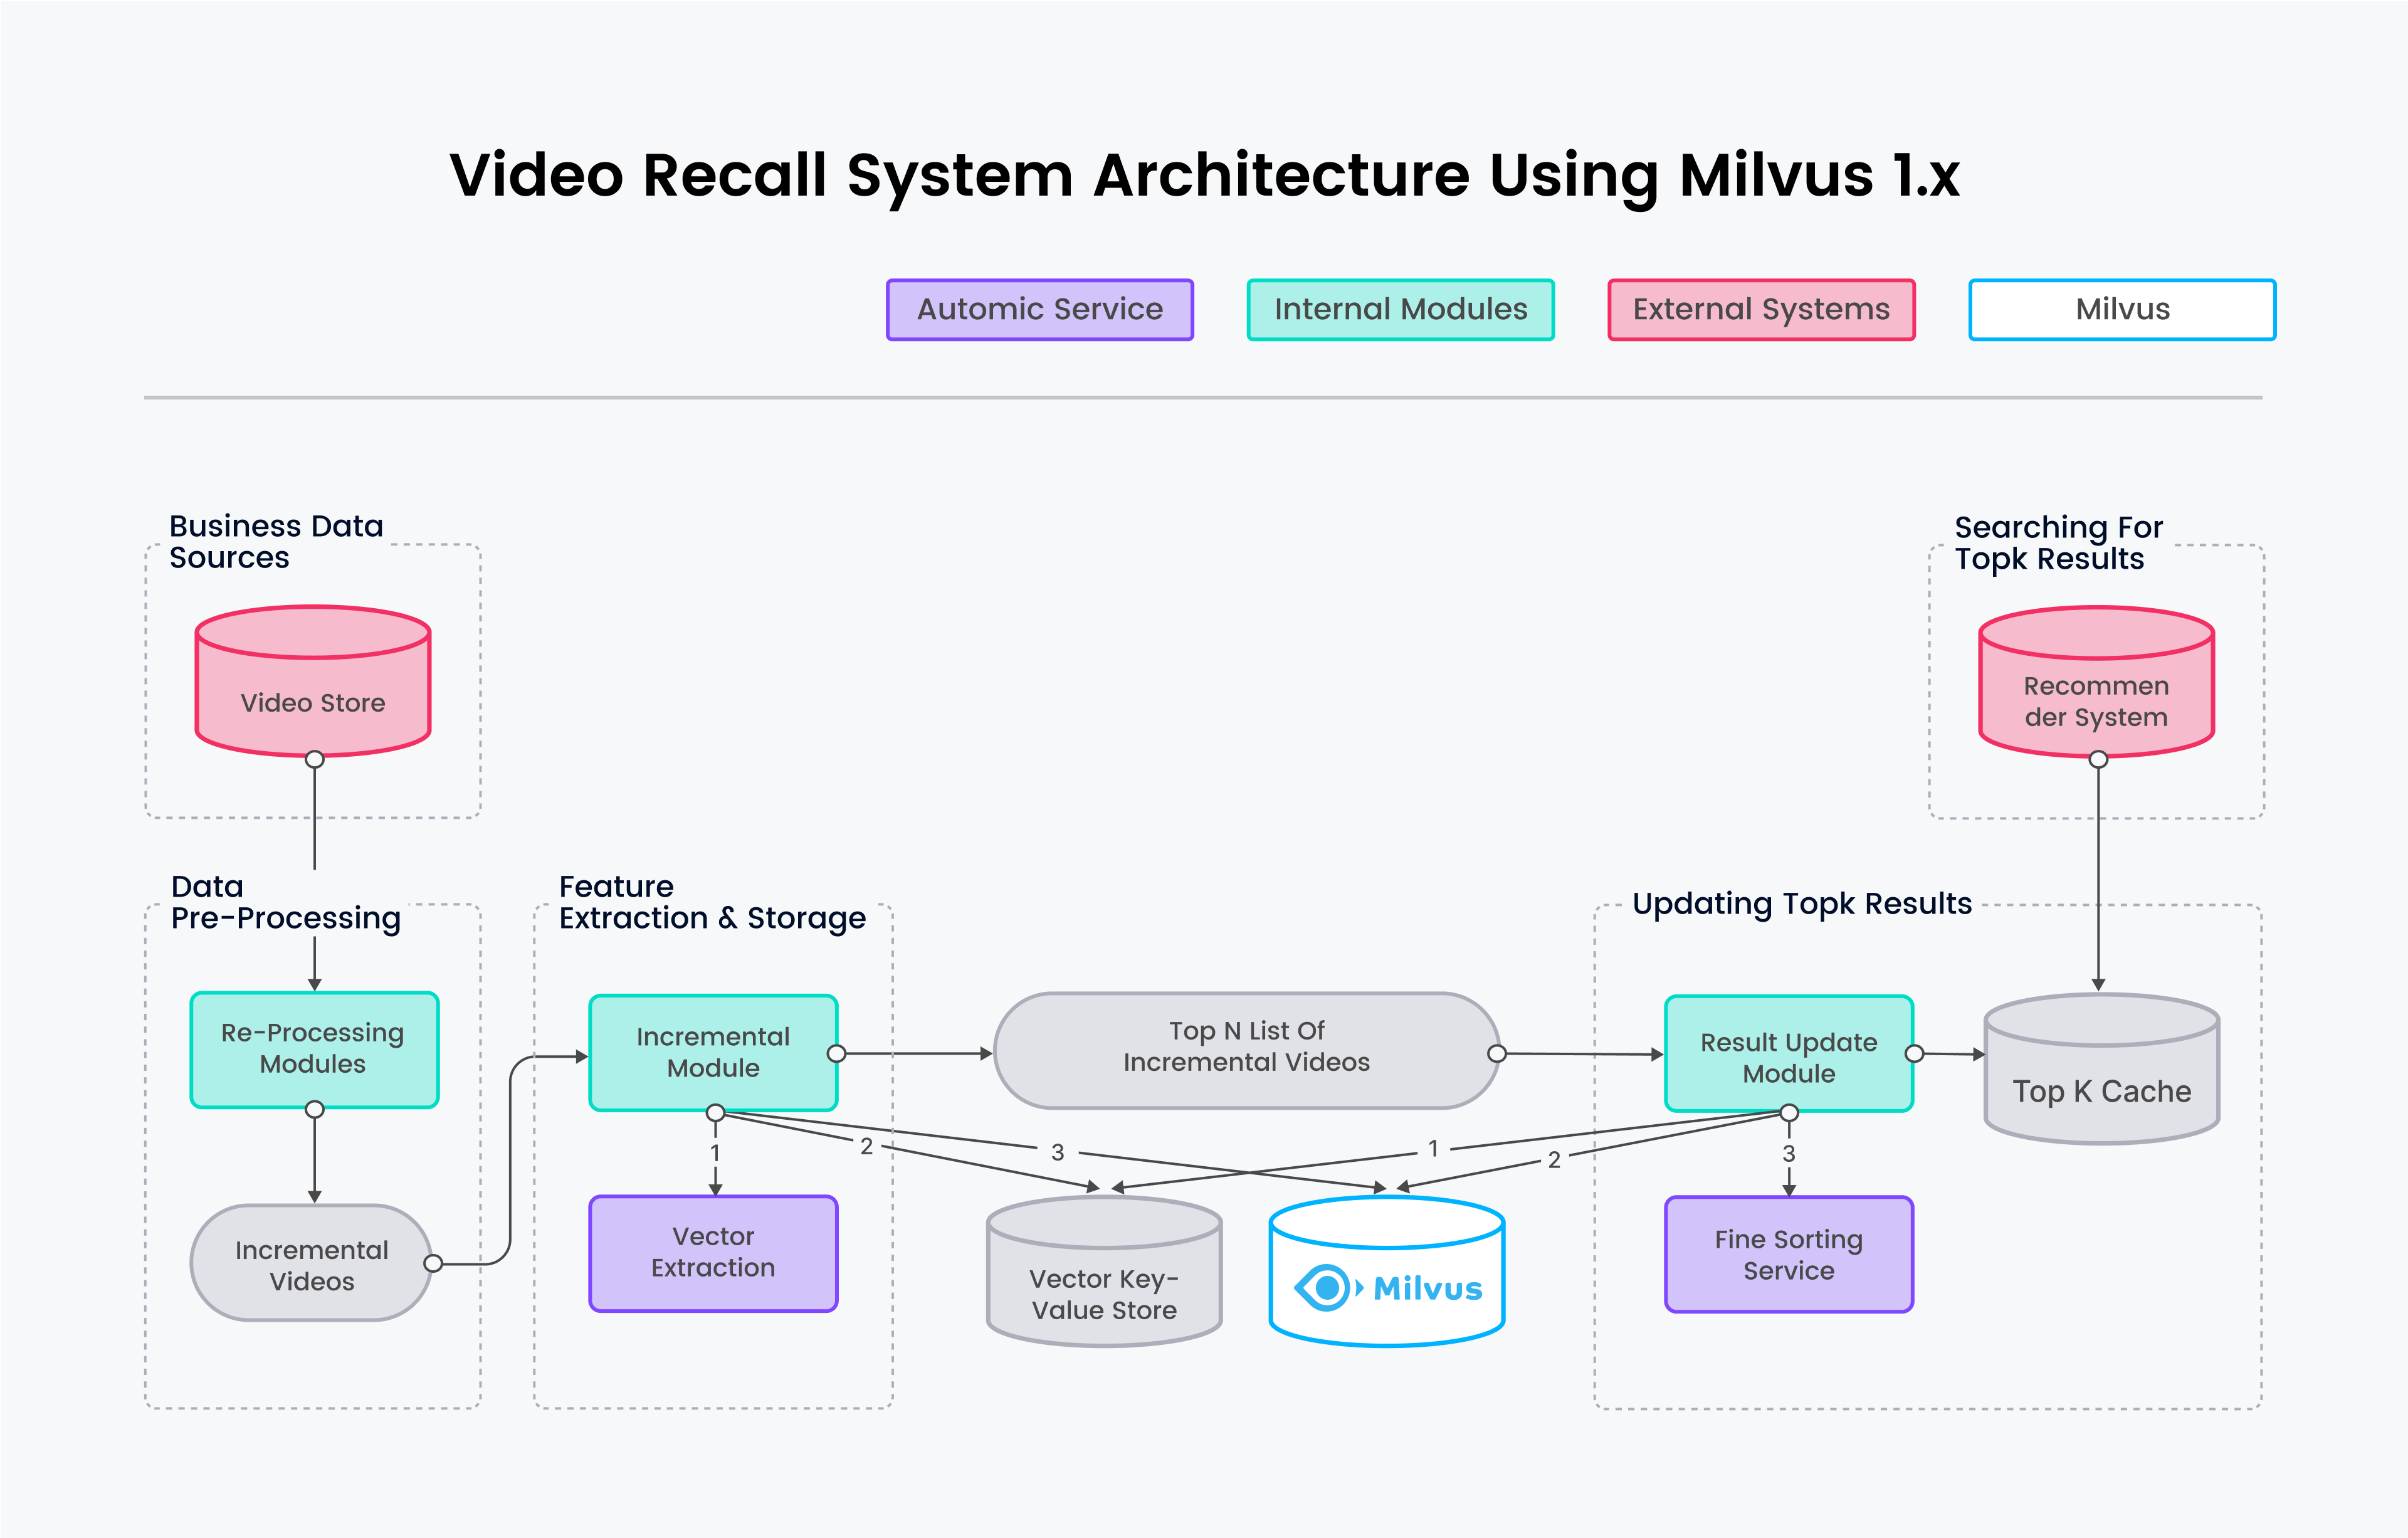 使用 Milvus 1.x 的视屏召回系统架构